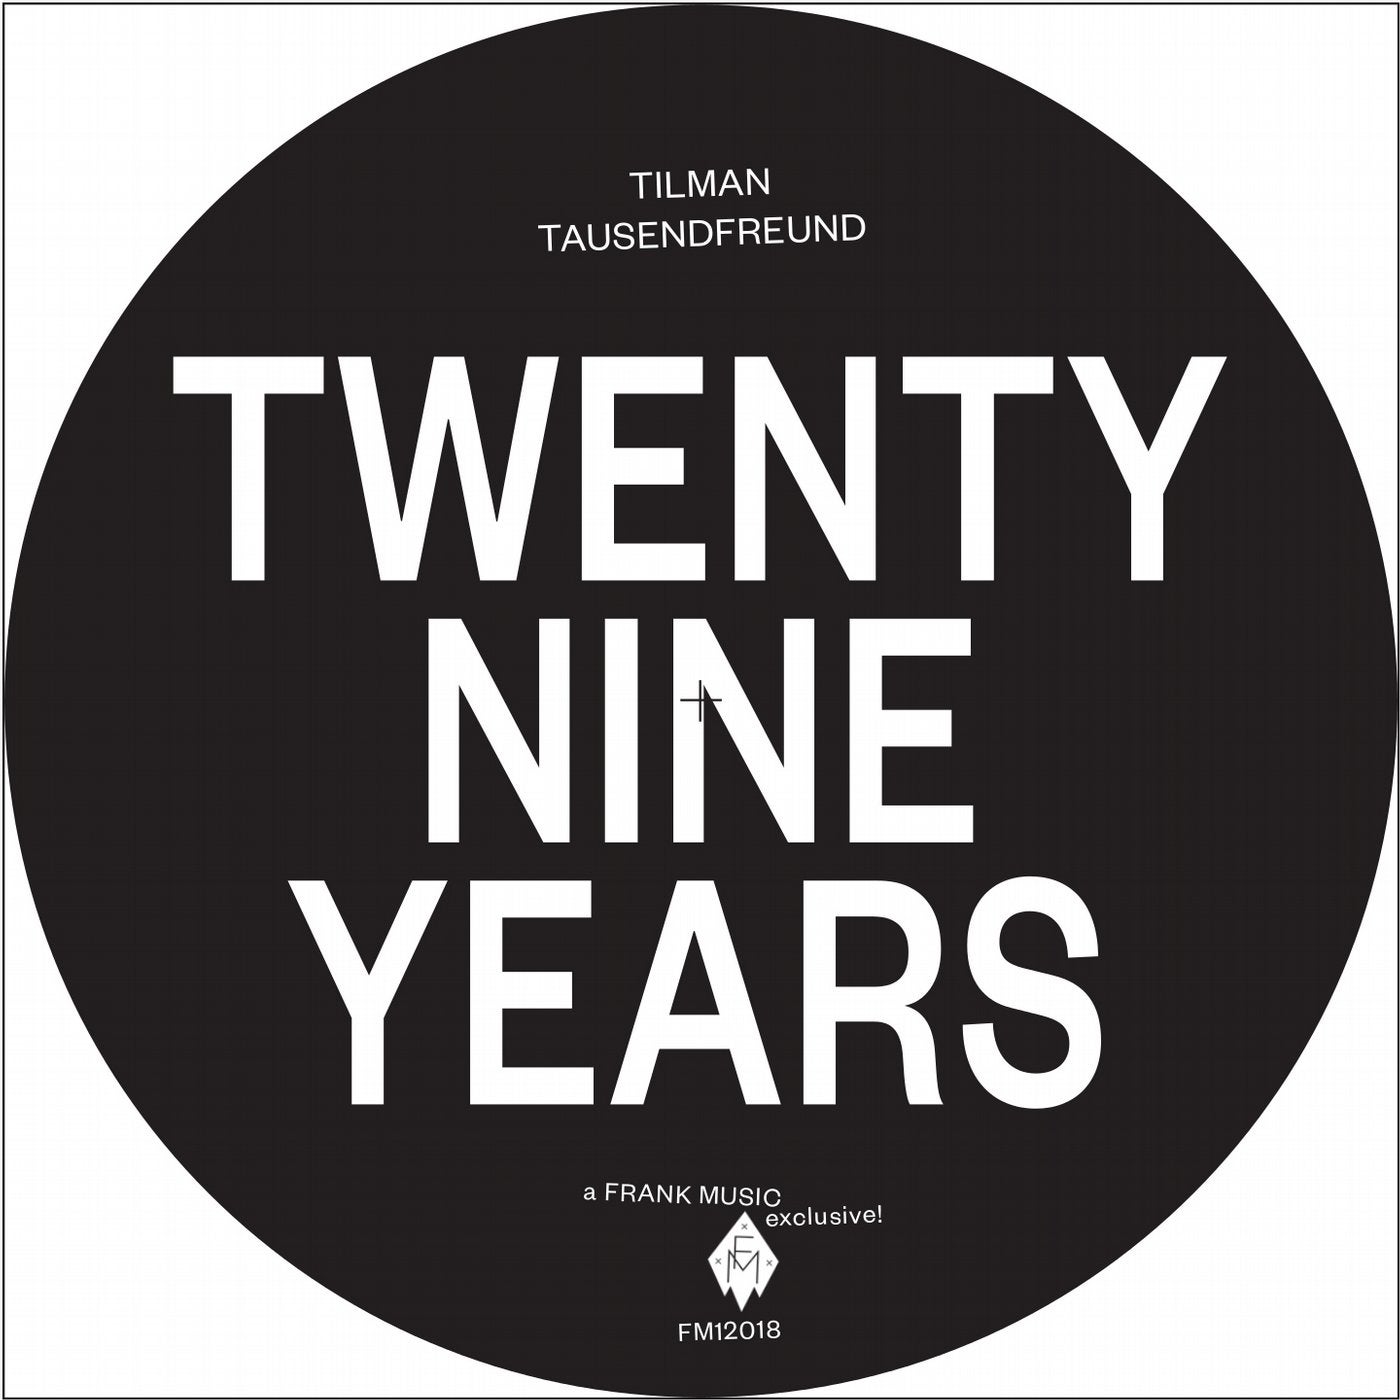 Twenty Nine Years